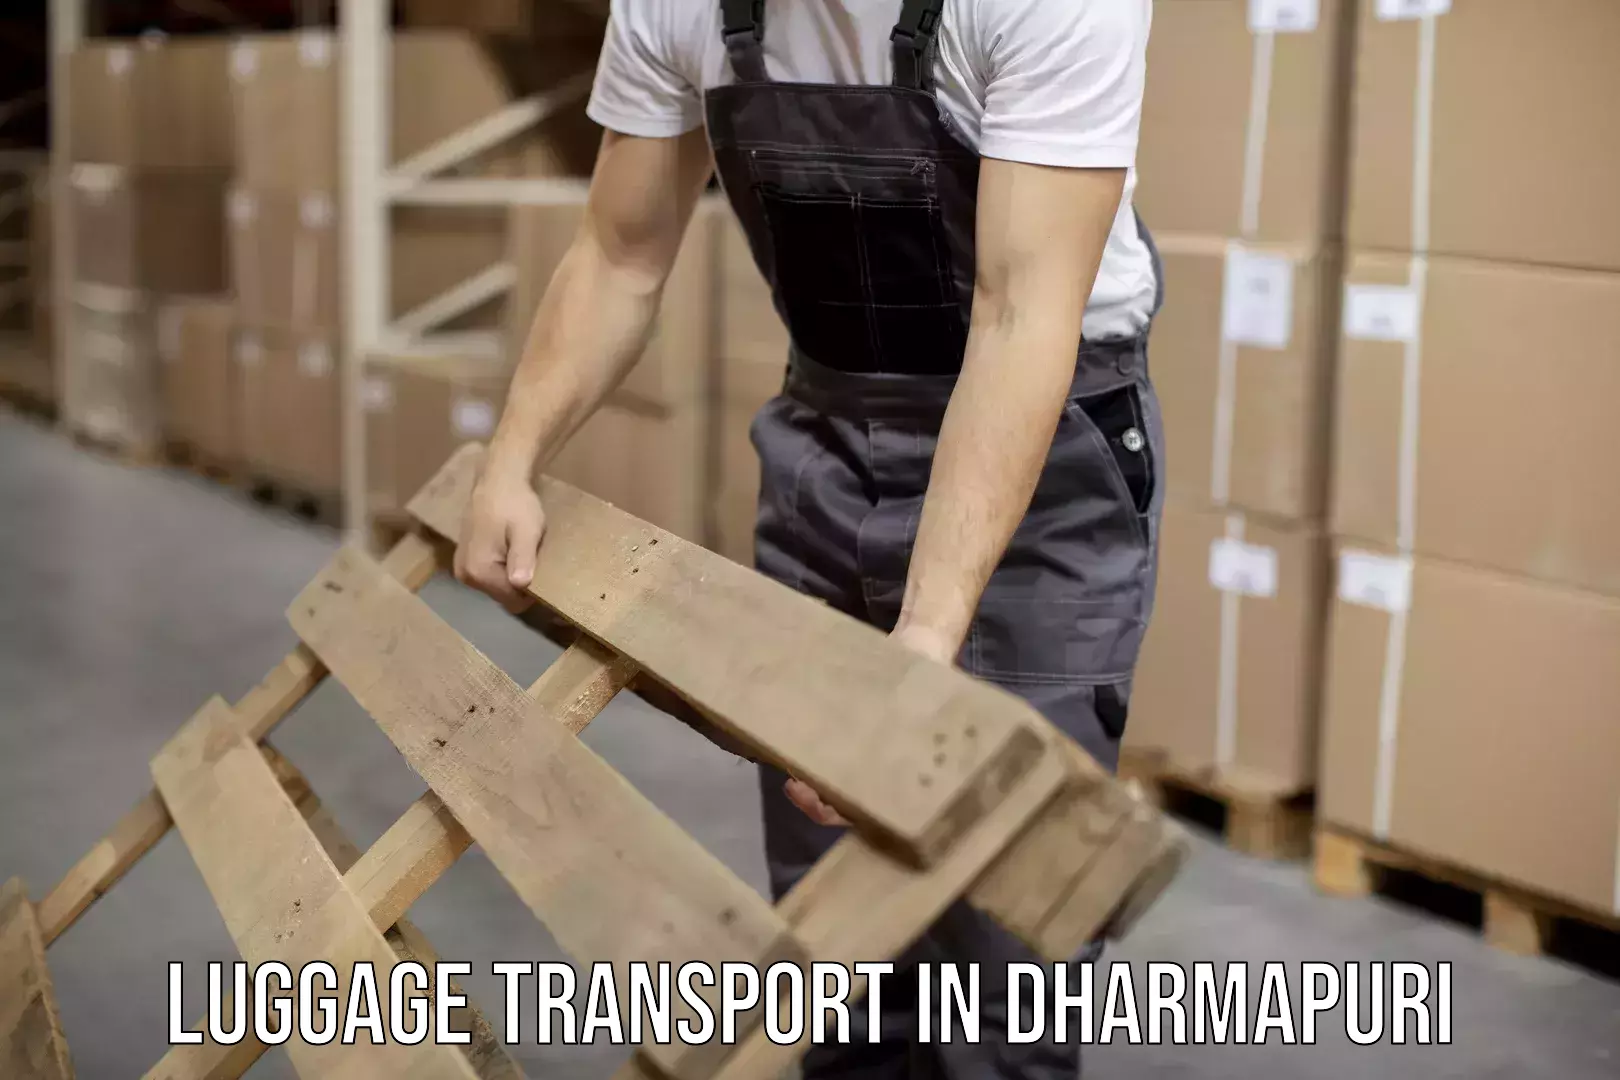 Domestic luggage transport in Dharmapuri